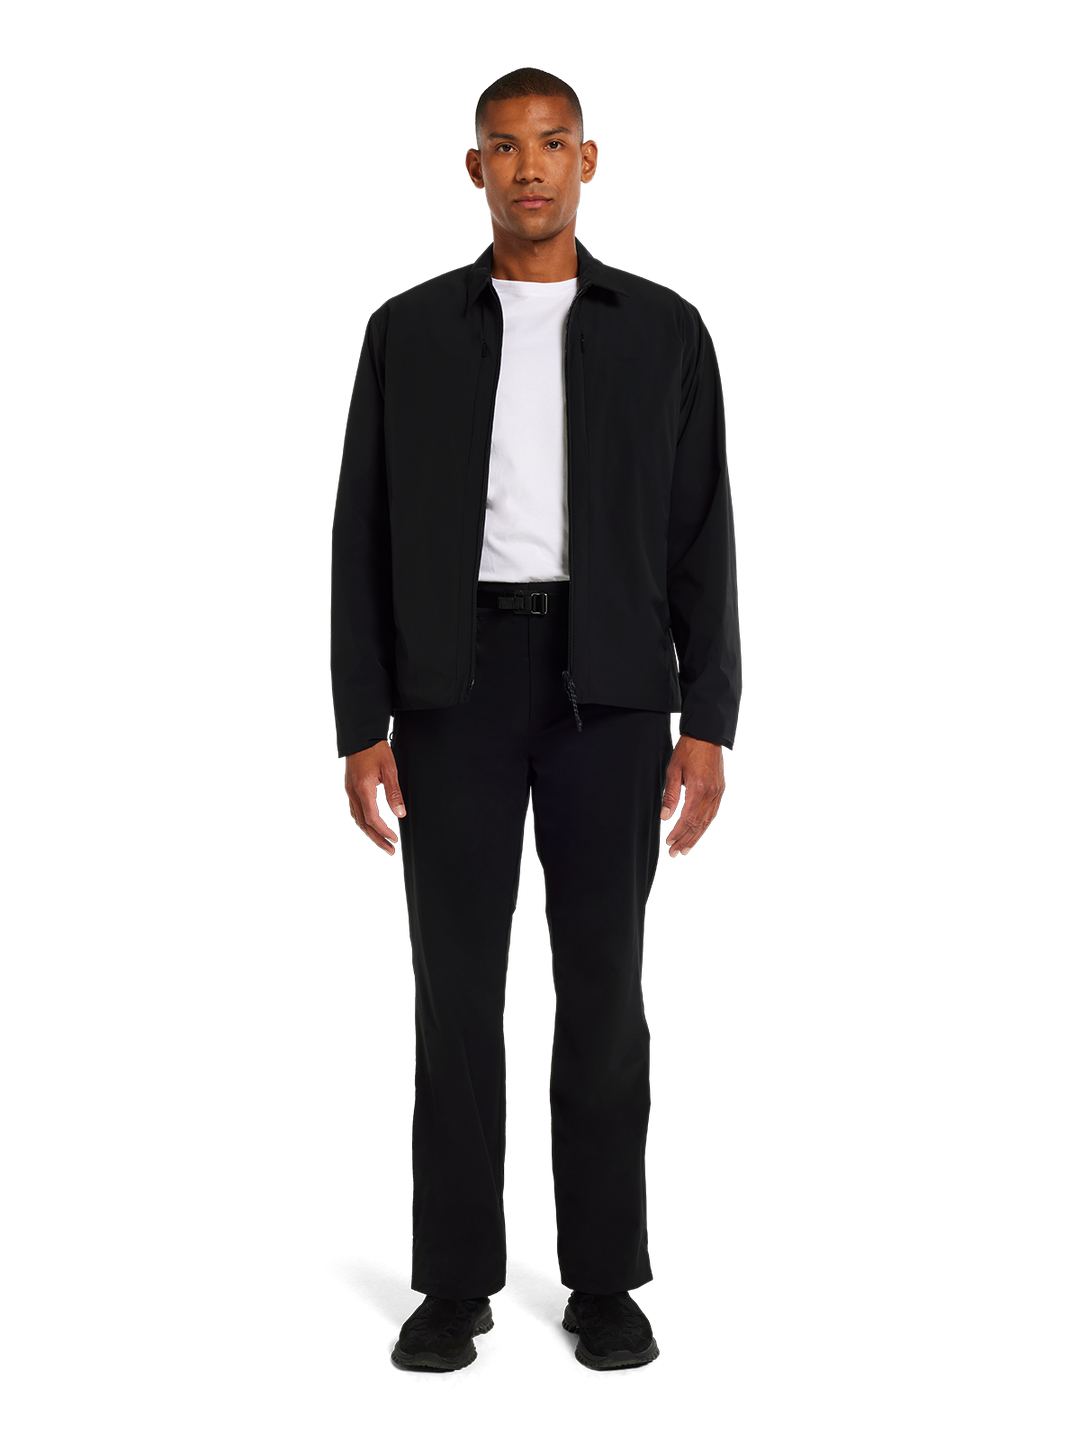 Folven lightweight shirt jacket  Black